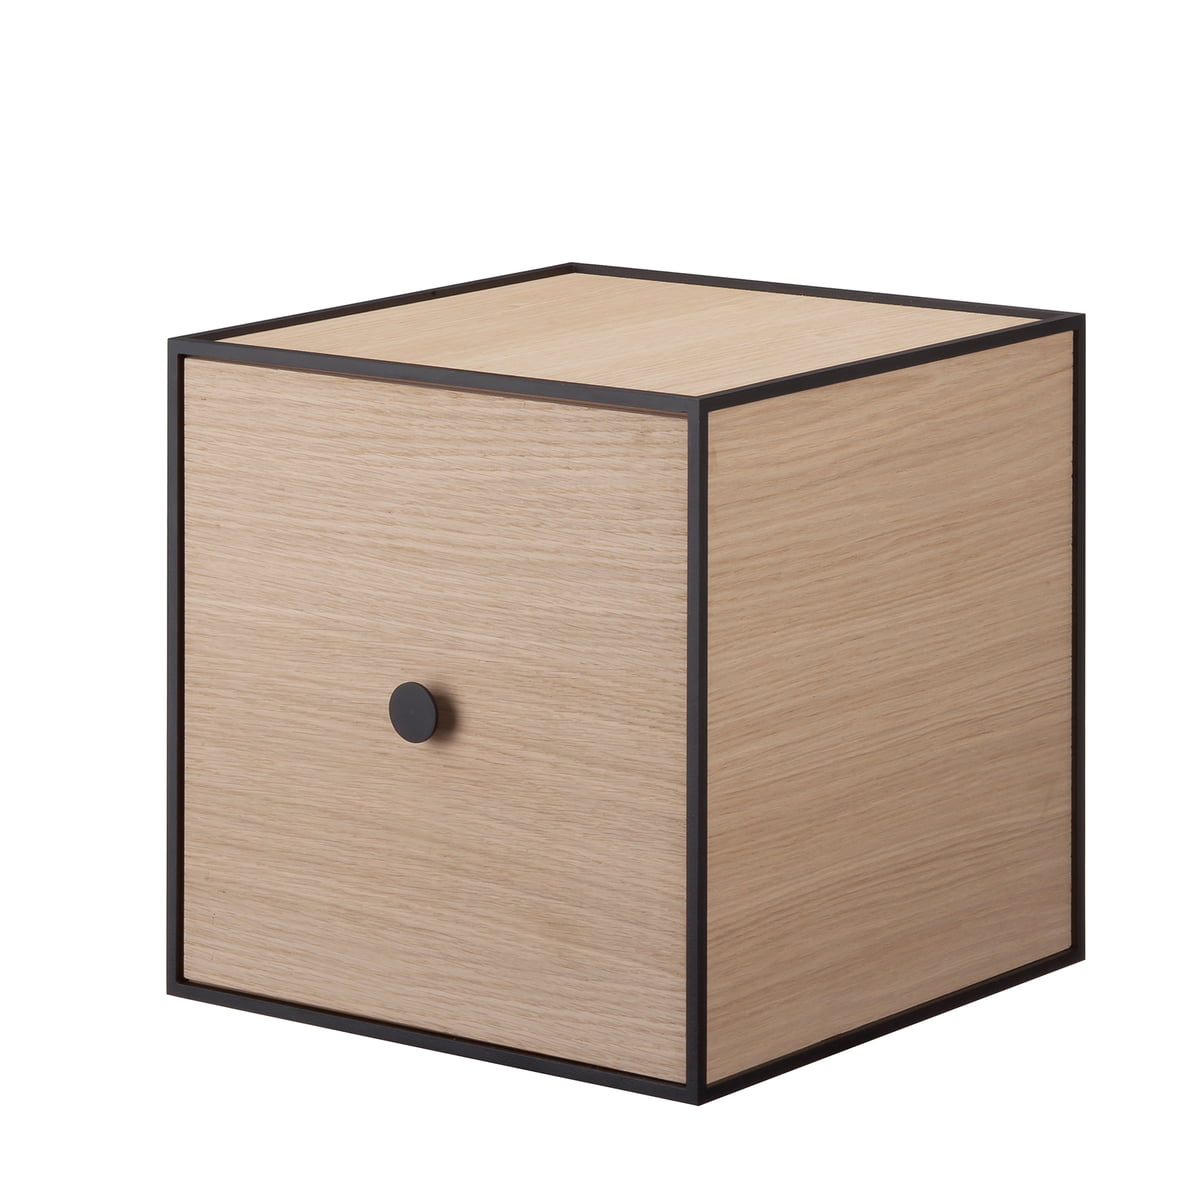 Тумба cube. Тумбочка куб. Тумбочка куб из дерева. Кубическая тумба. Интерьерный куб-тумба.